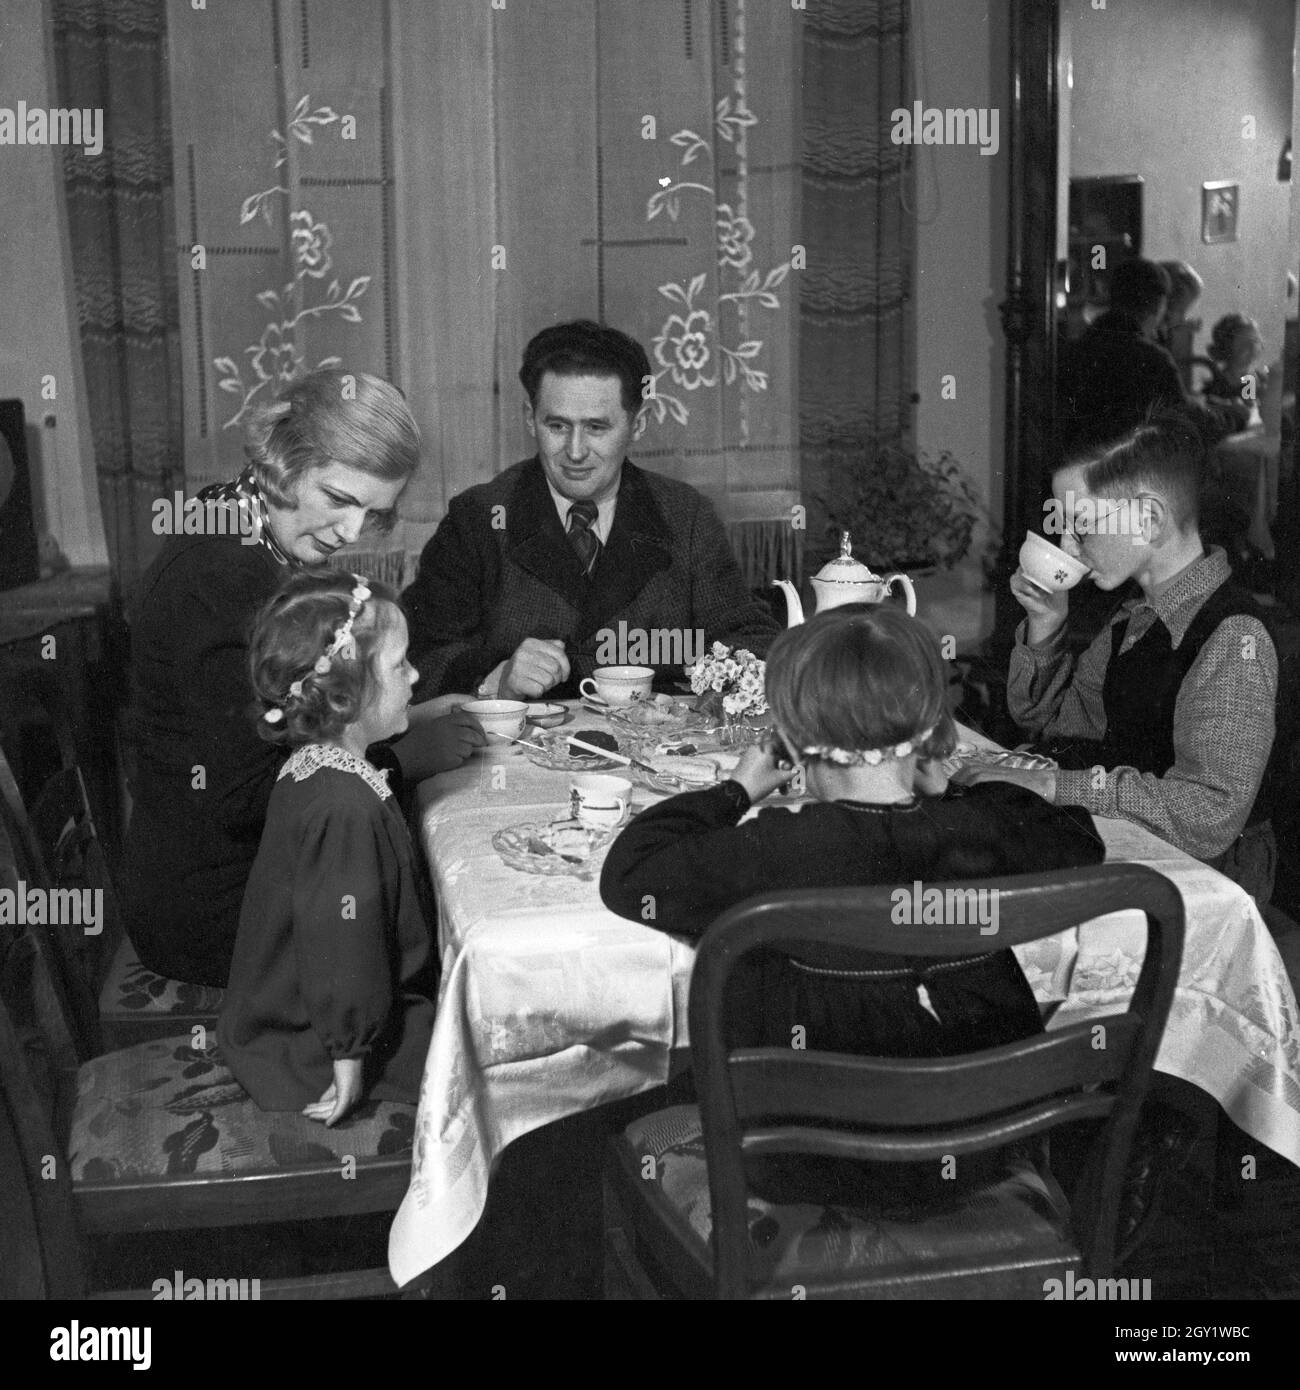 Eine Familie sitzt im Wohnzimmer am Kaffeetisch, Deutschland 1930er Jahre. Une famille assise au tabele, ayant un café, Allemagne des années 1930. Banque D'Images